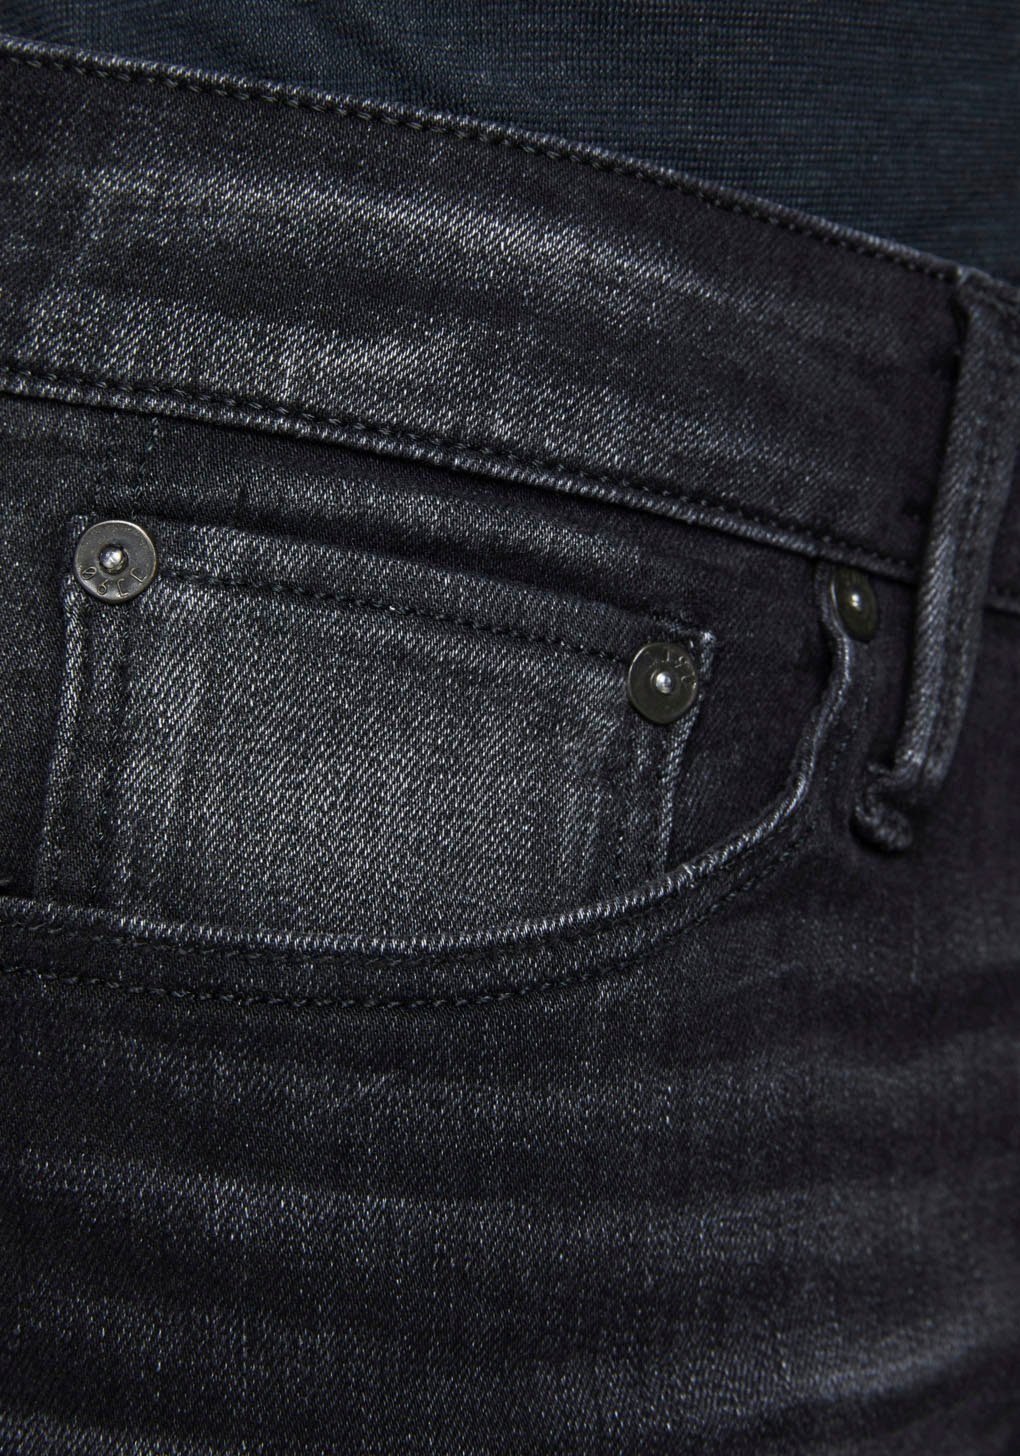 Jack & Jones Slim-fit-Jeans GLENN ICON black-denim